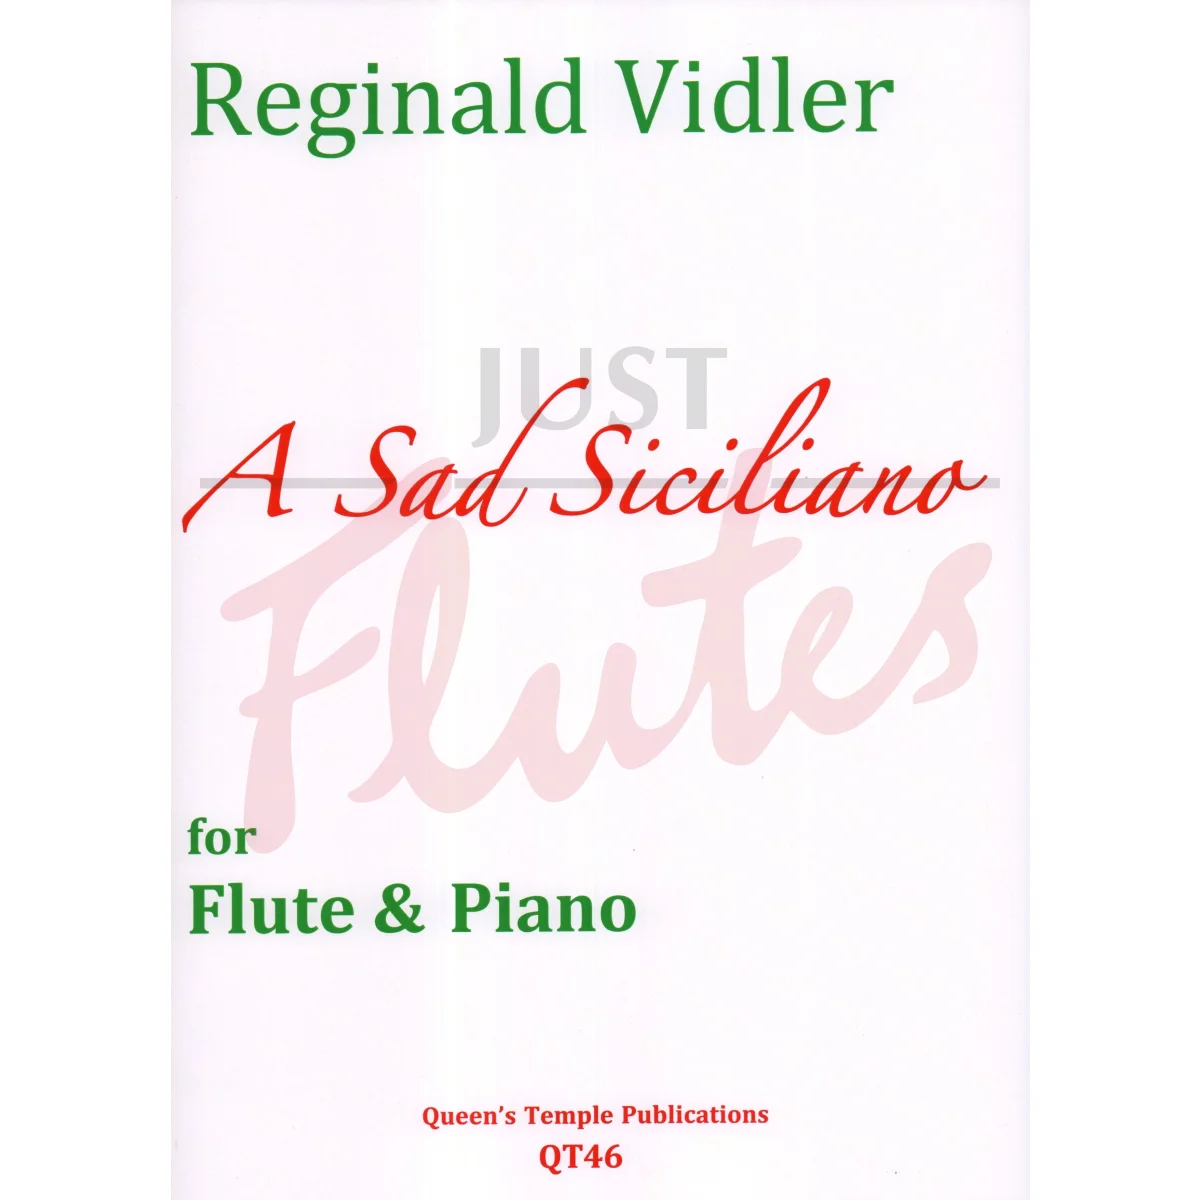 A Sad Siciliano for Flute and Piano